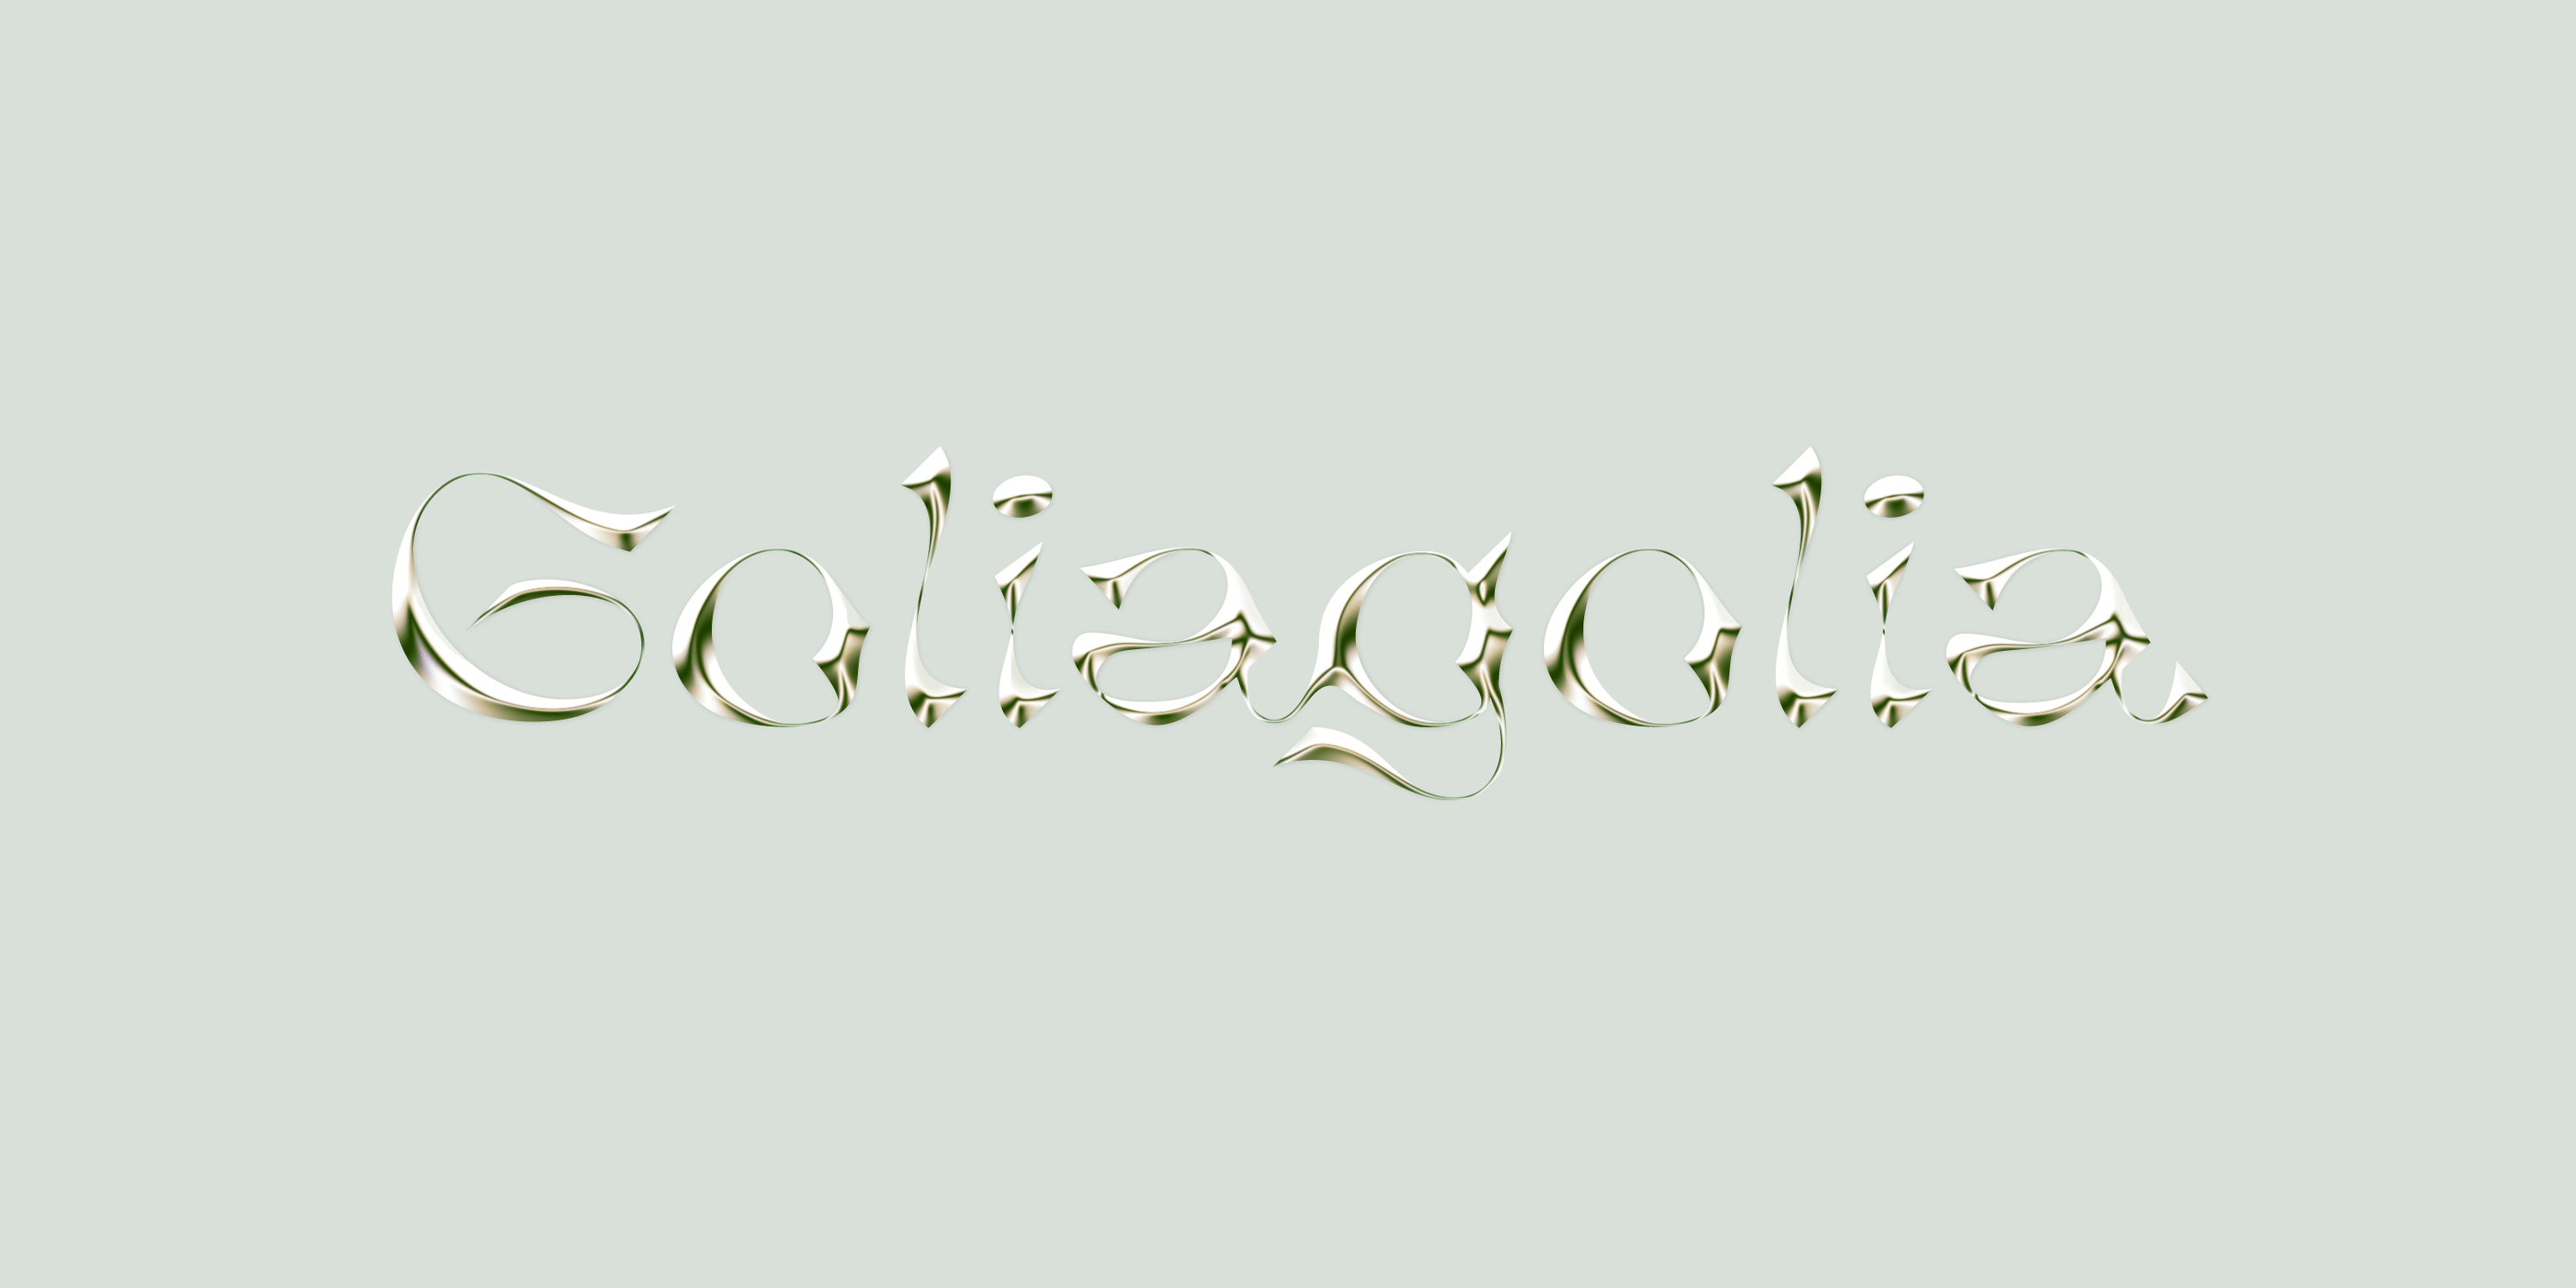 经典巴洛克式酸性艺术手写锐利曲线英文字体 Goliagoli